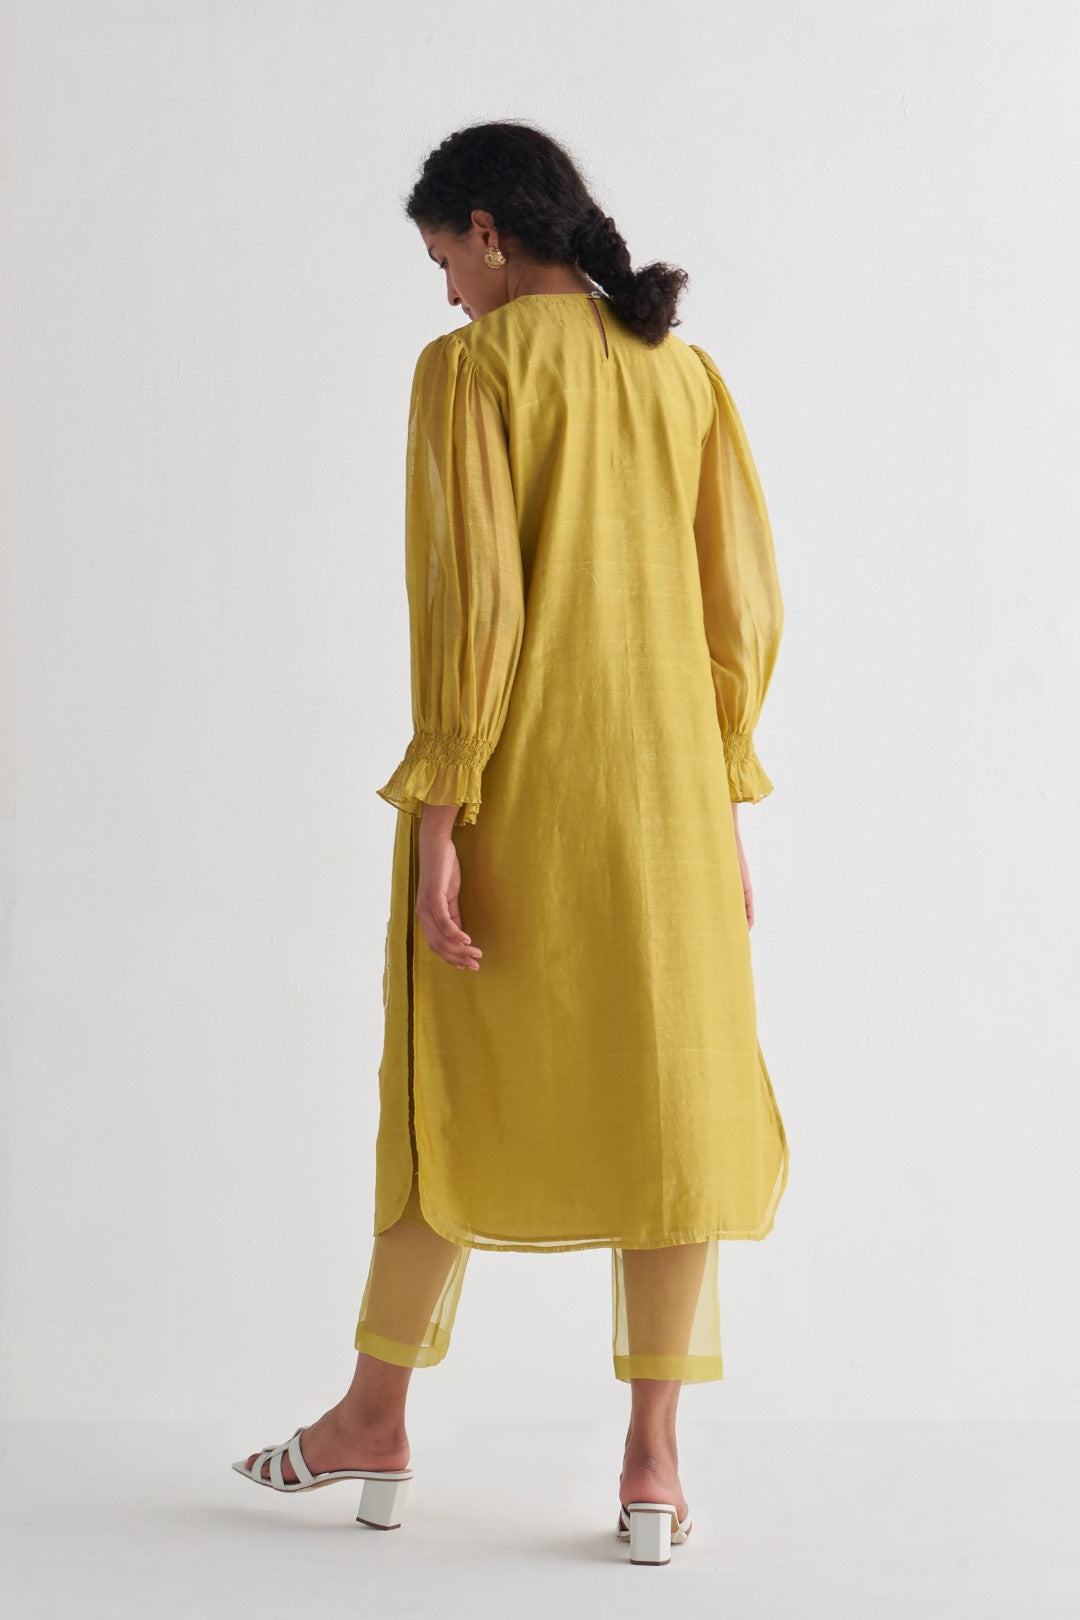 Amber Yellow Couching Dress